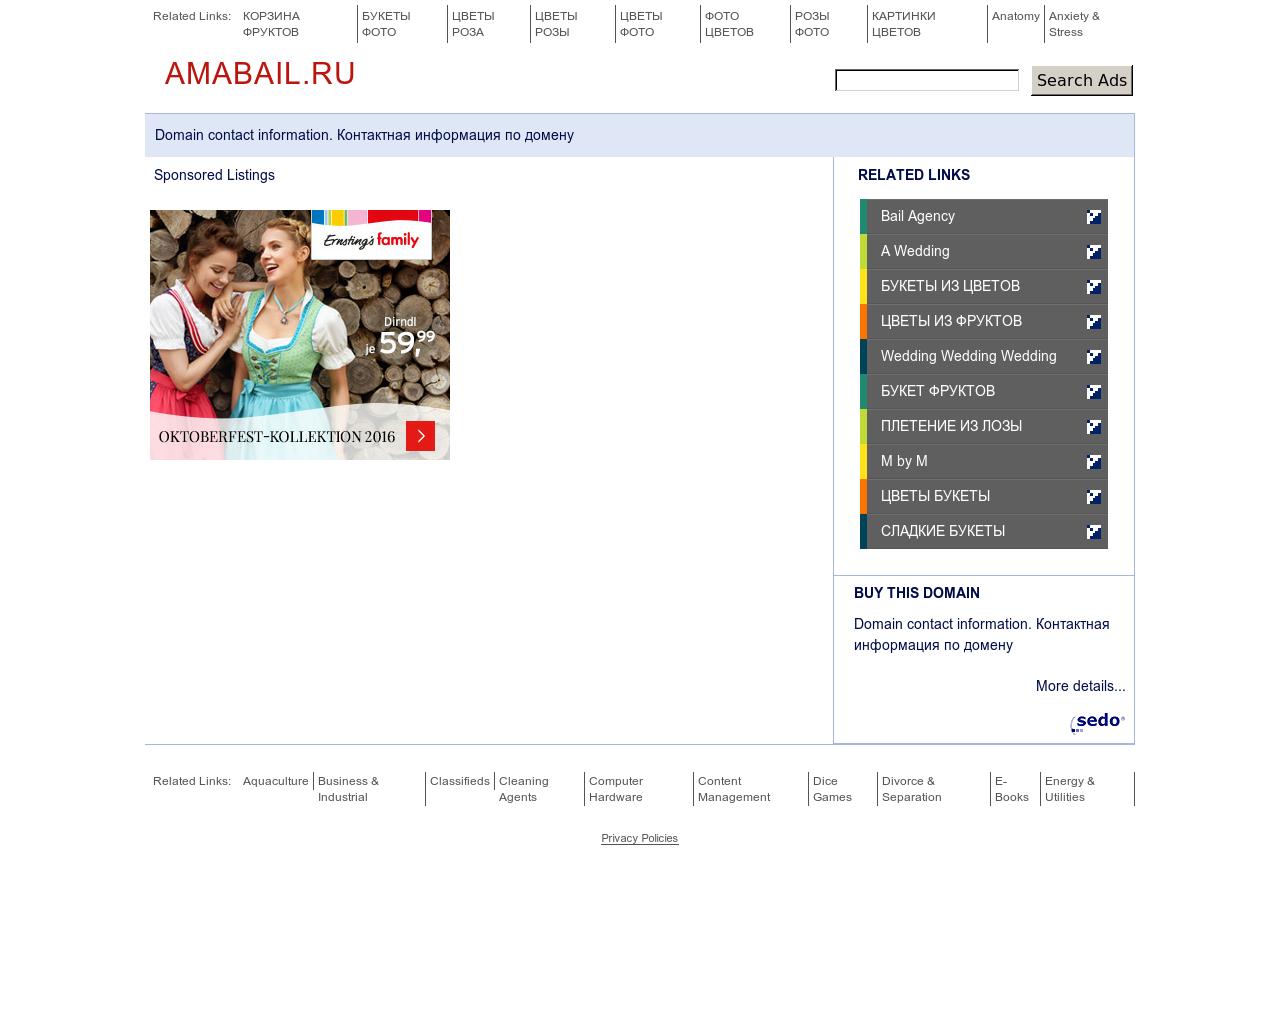 Изображение сайта amabail.ru в разрешении 1280x1024